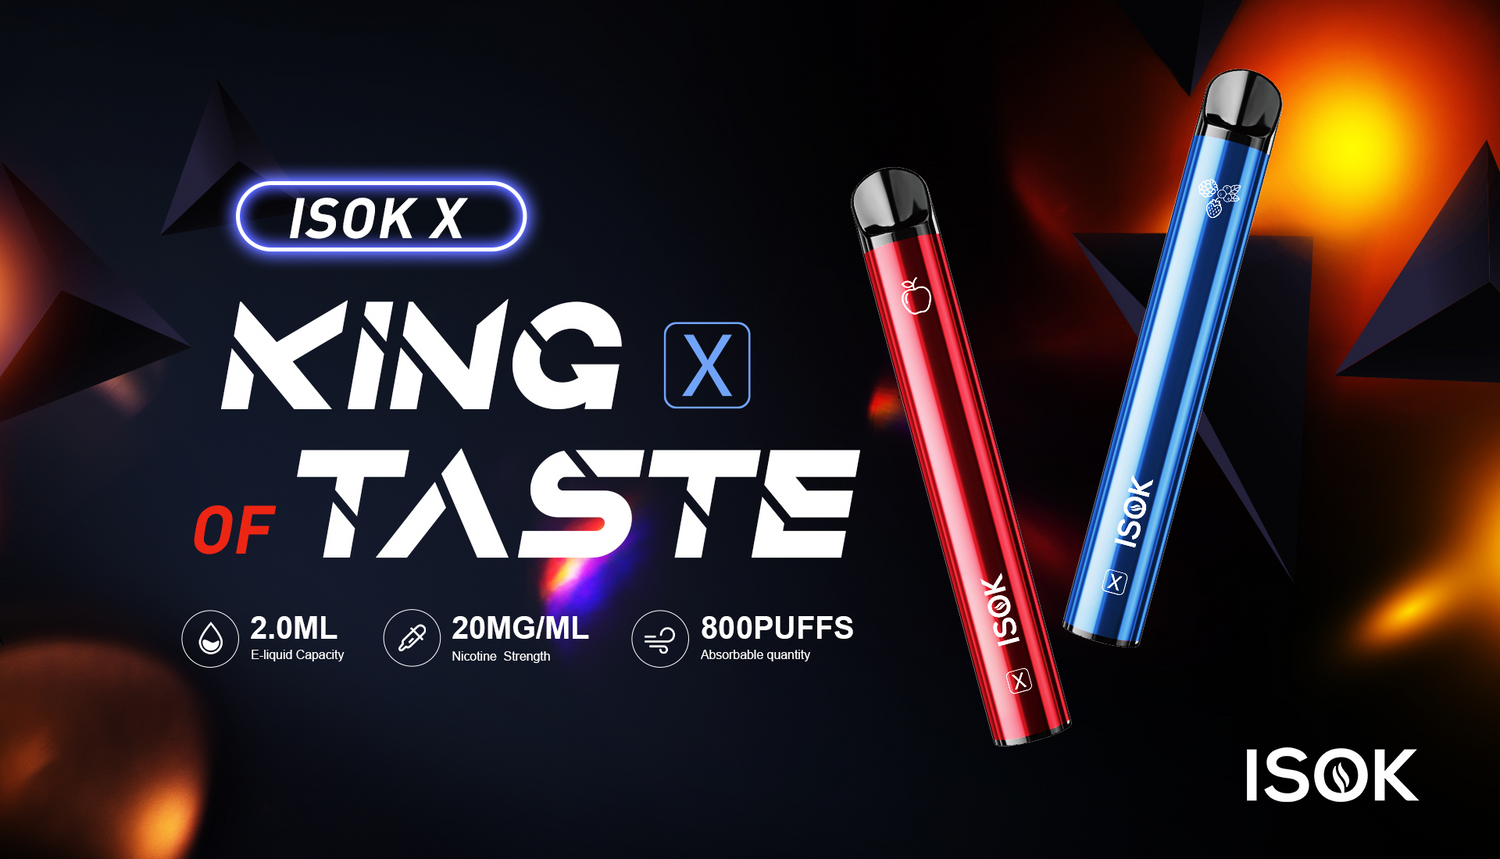 ISOK X King of Taste